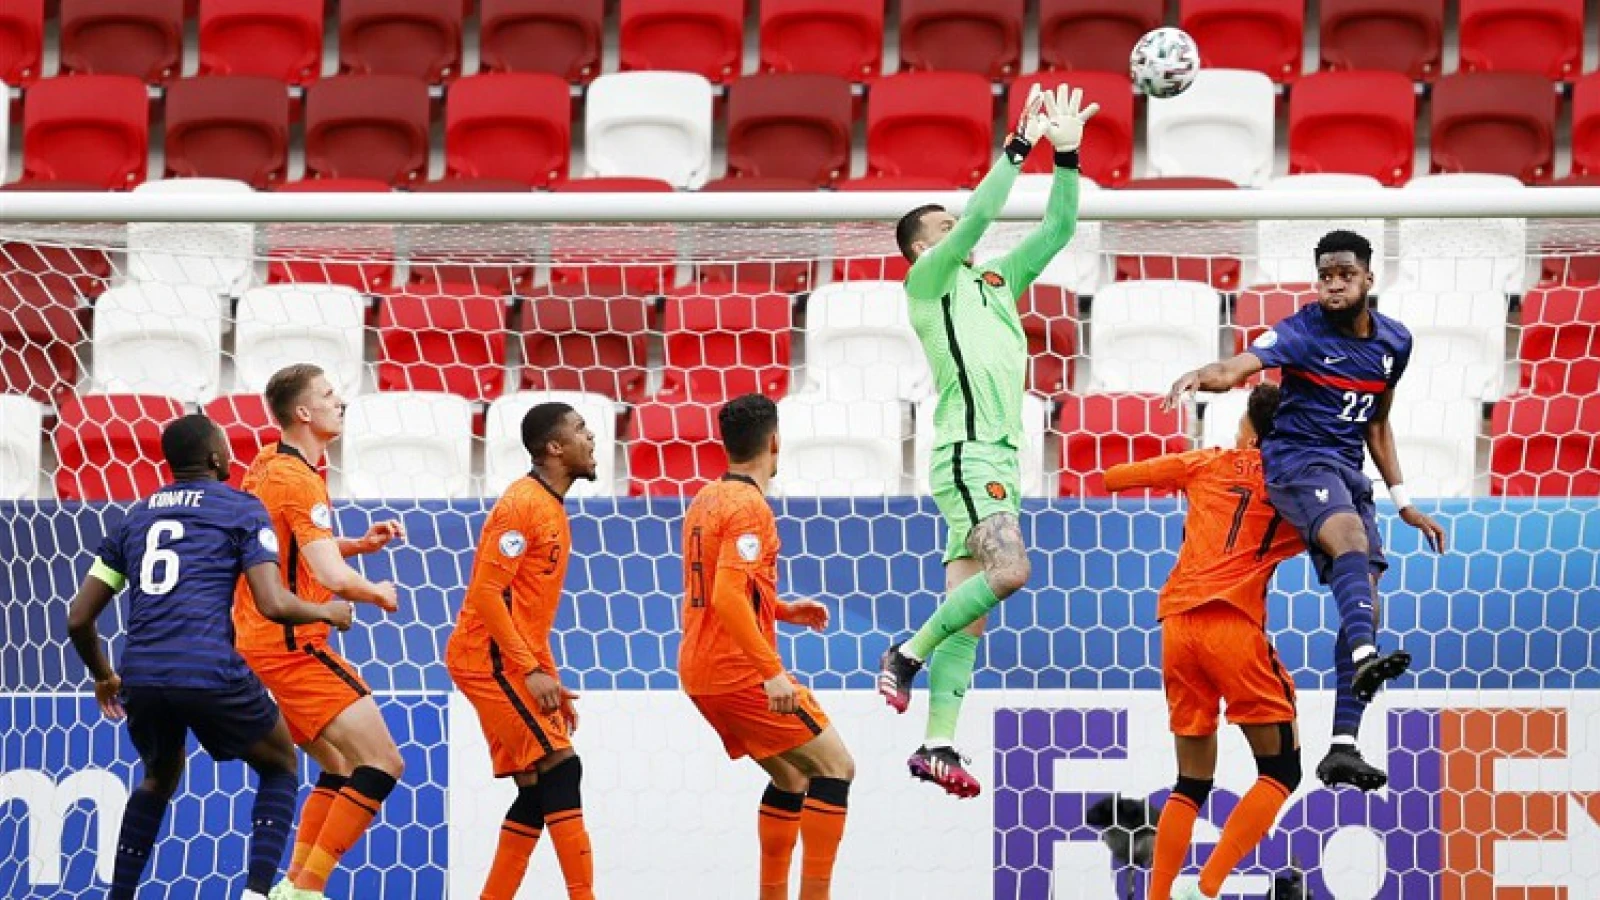 Jong Nederland treft Jong Duitsland in halve finale EK